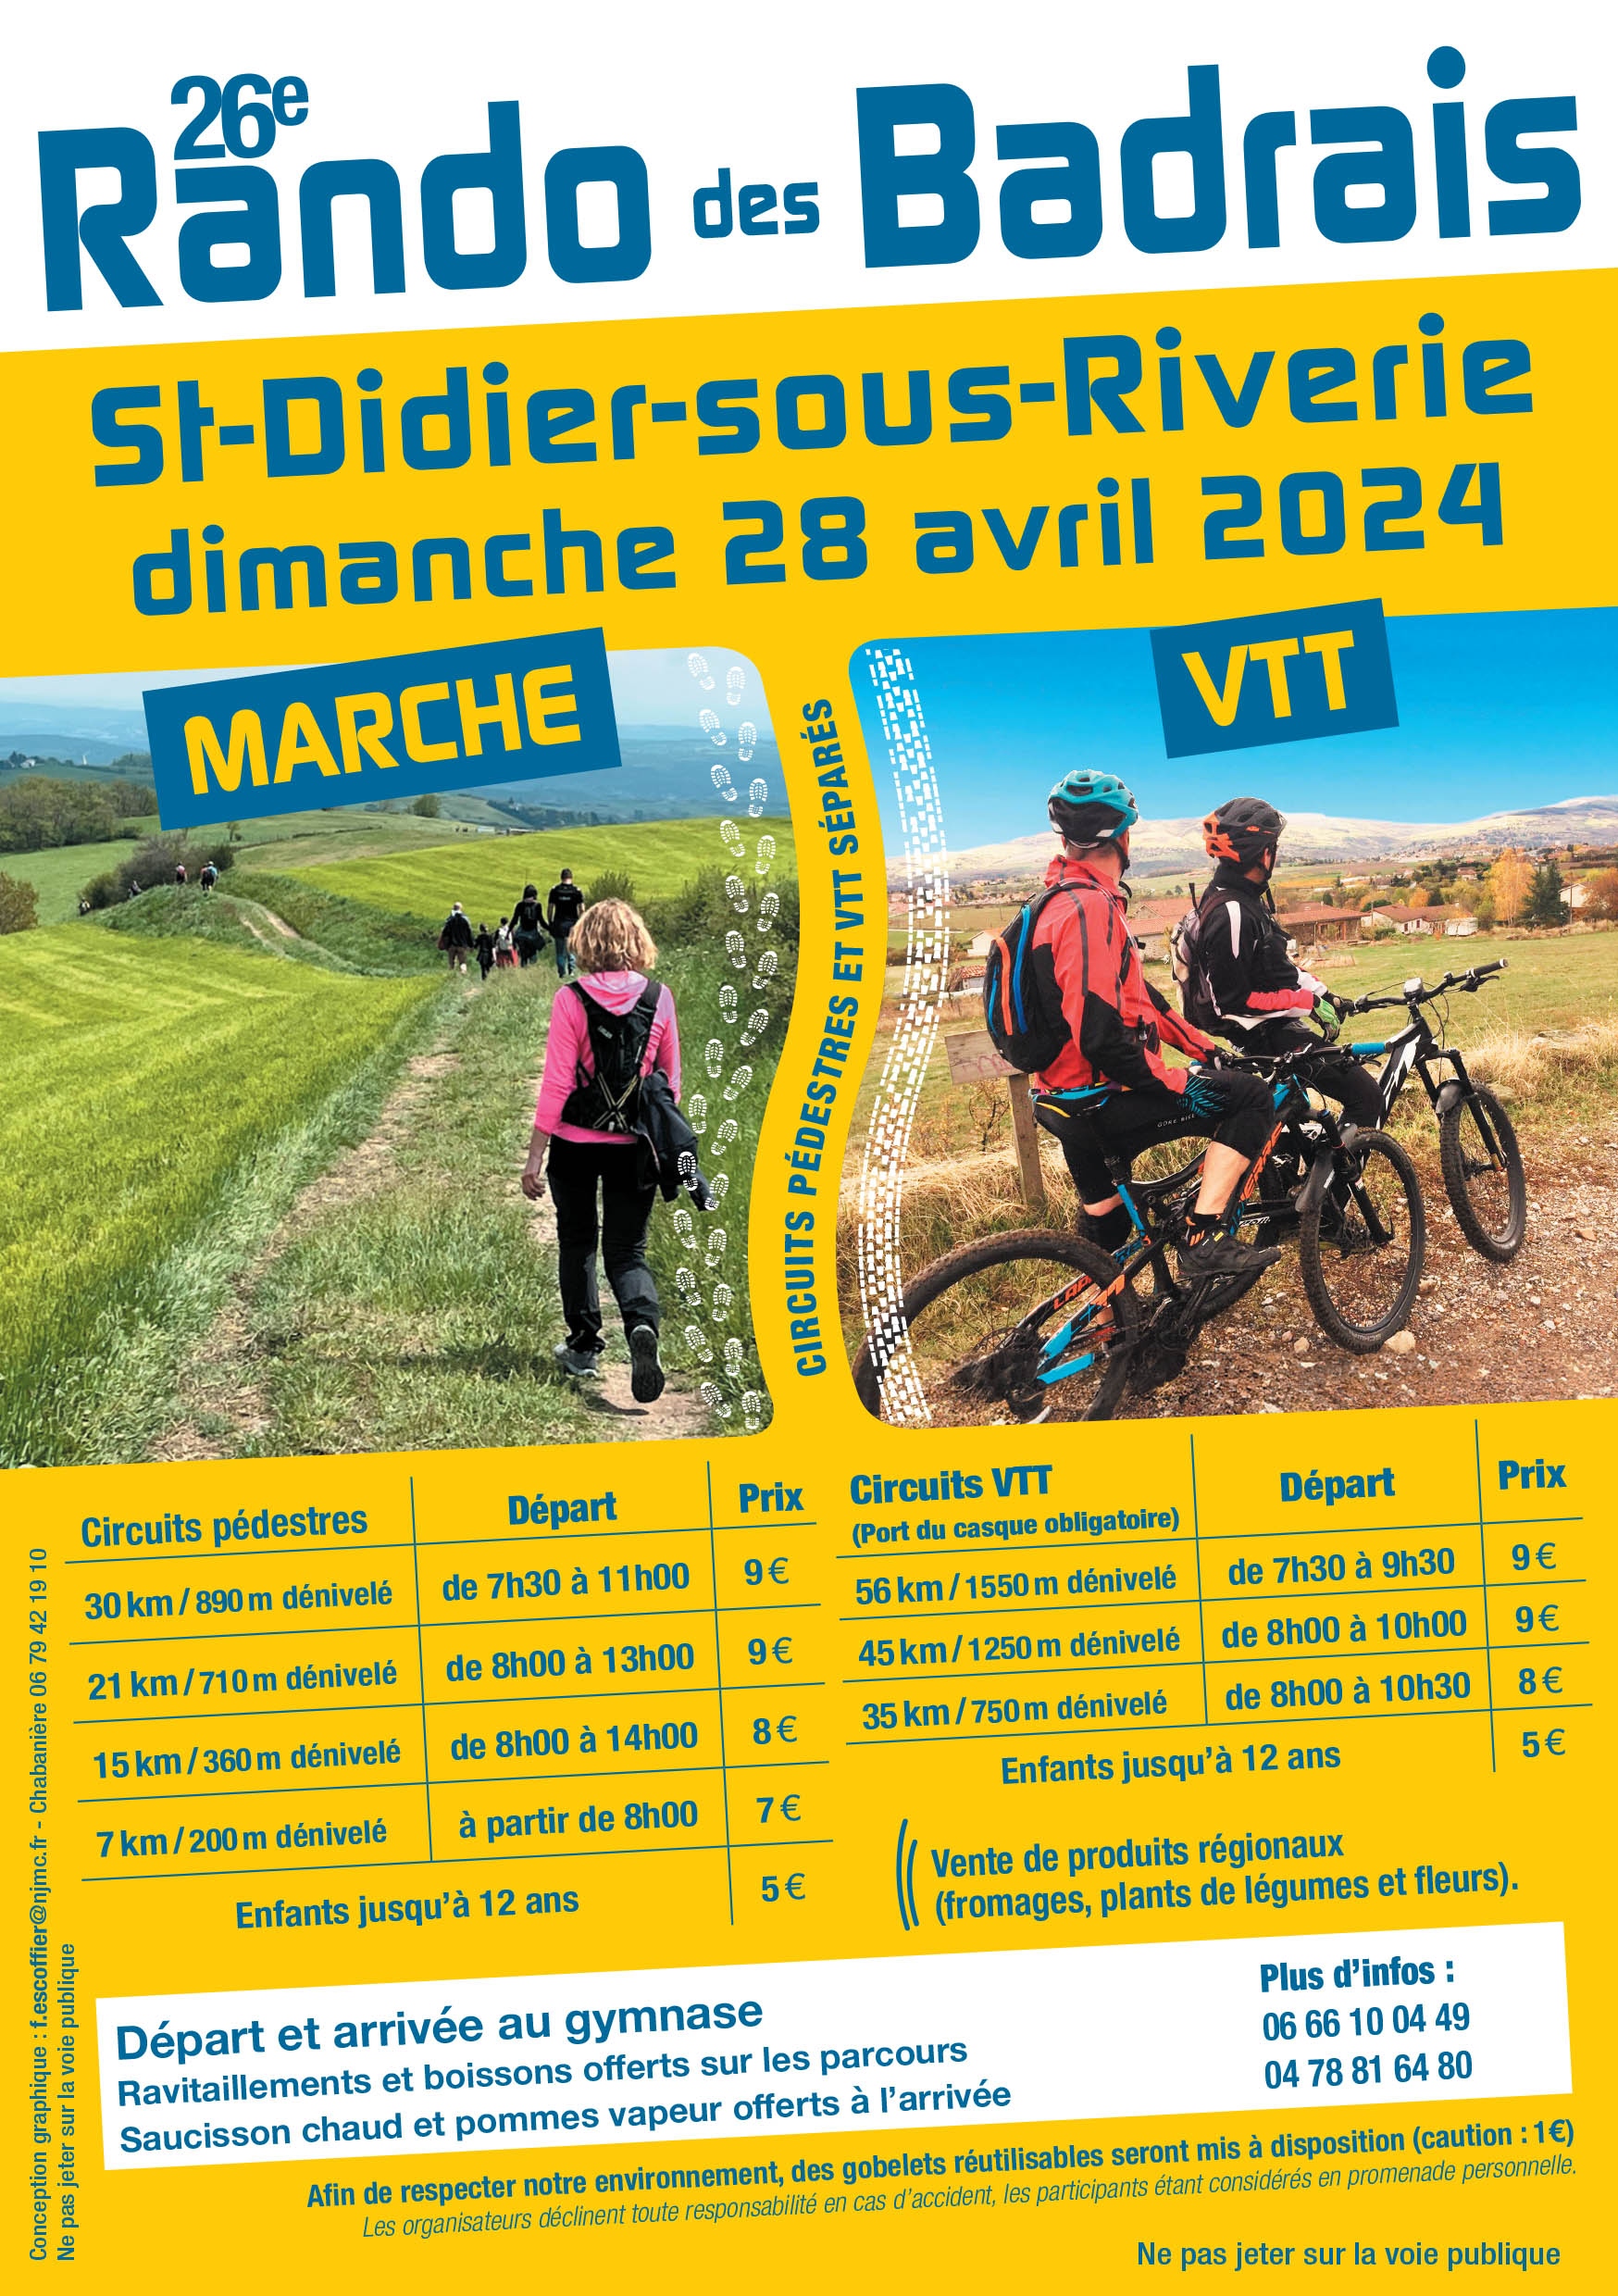 Affiche de La 26ème Rando des Badrais à Saint-Didier-sous-Riverie